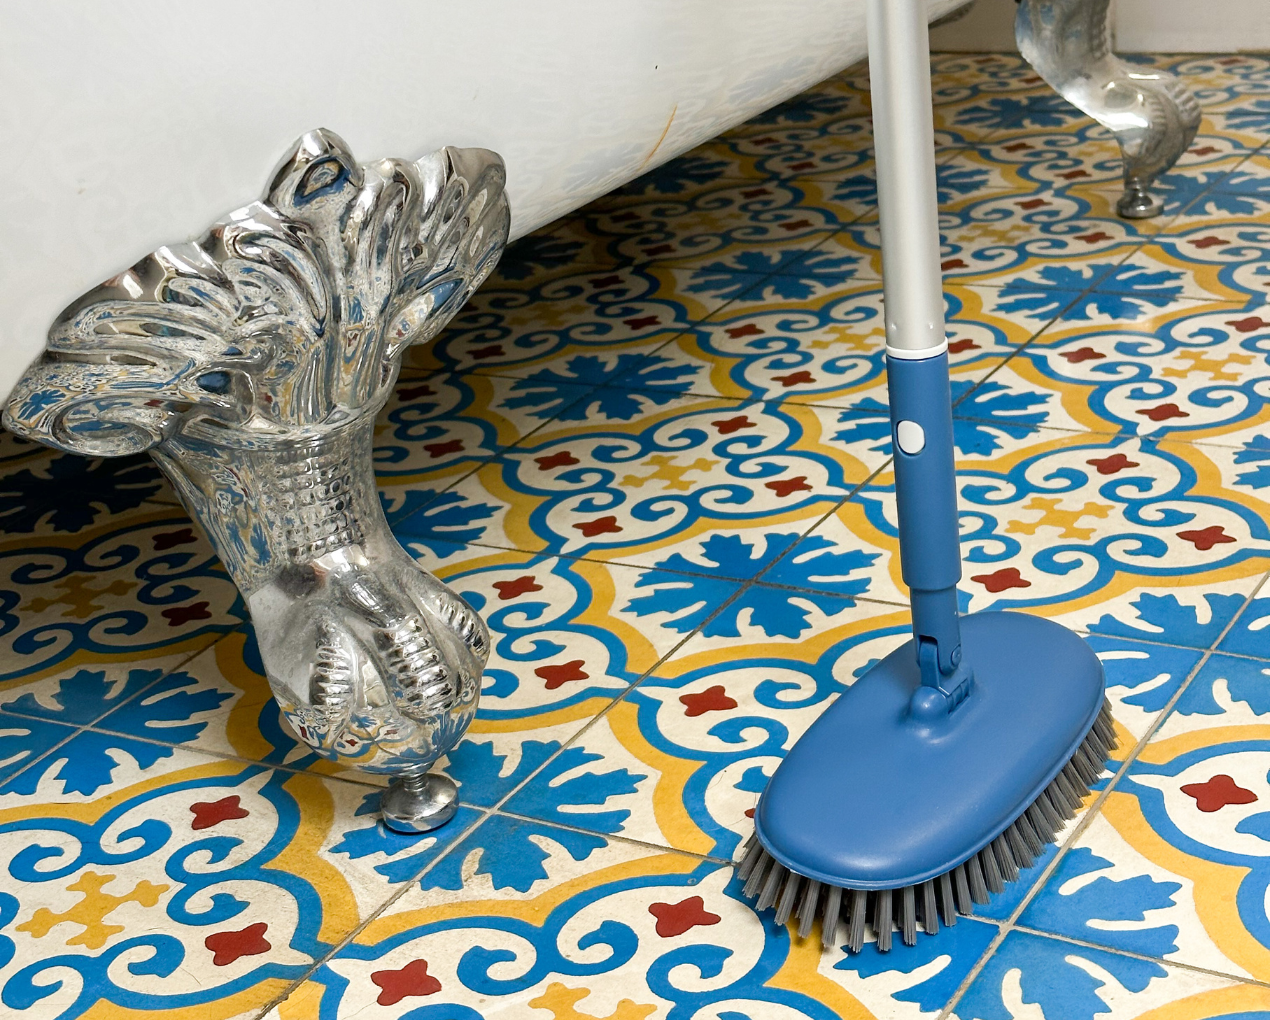 Nettoyer les joints d'une salle de bain : 3 astuces efficaces